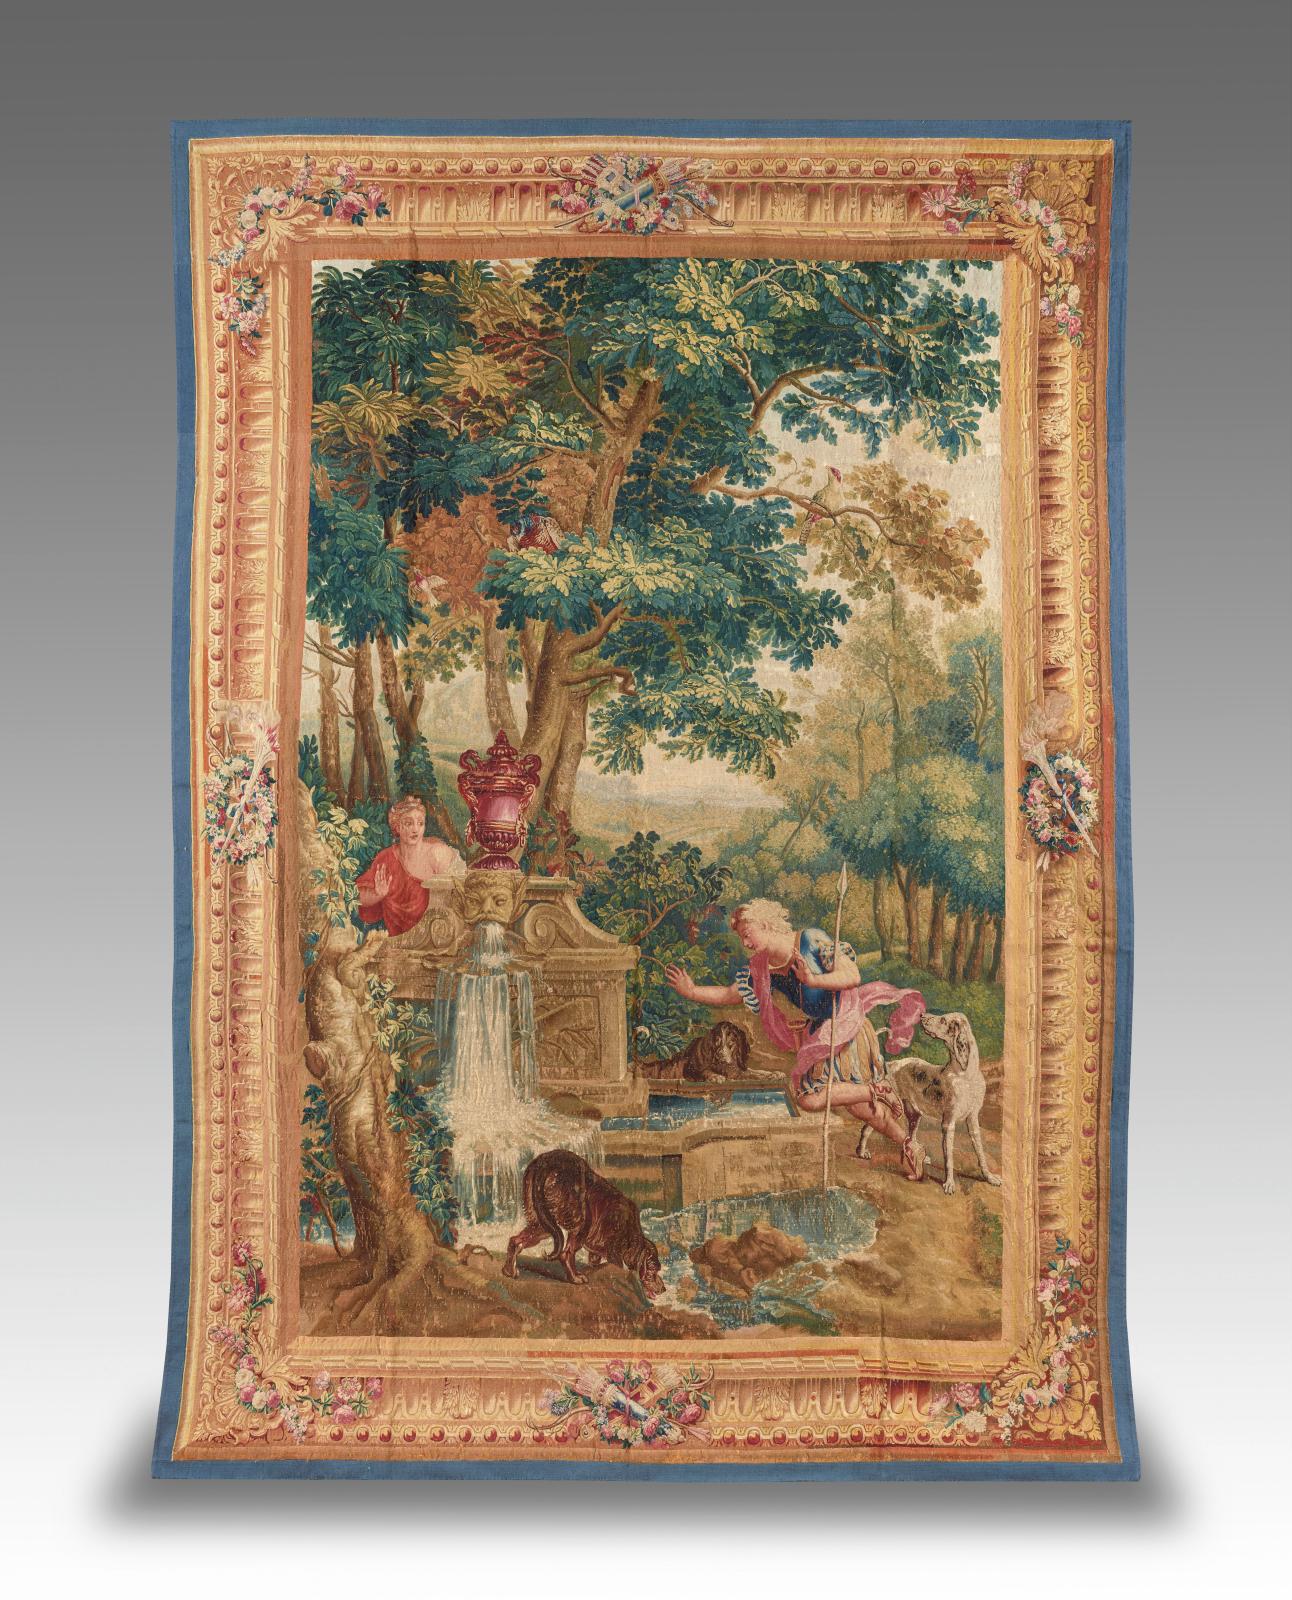 Manufacture des Gobelins, première moitié du XVIIe siècle, tapisserie de Narcisseet Écho (détail), collection fondation Étrillard. © Chris